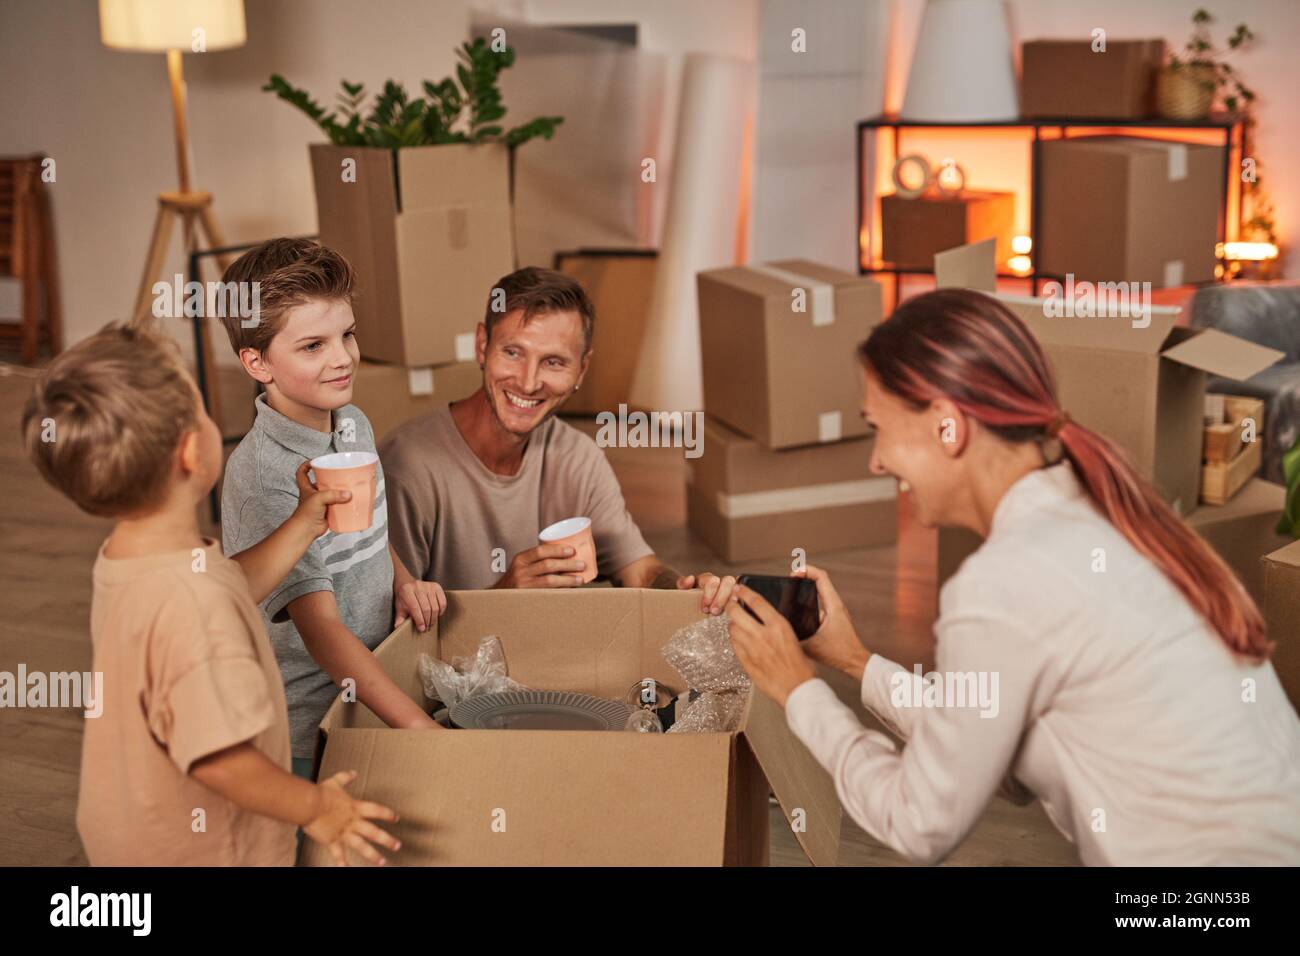 Porträt einer jungen glücklichen Familie, die Kisten mit Geschirr auspackt und Fotos macht, während sie in ein neues Zuhause einzieht, Platz kopiert Stockfoto